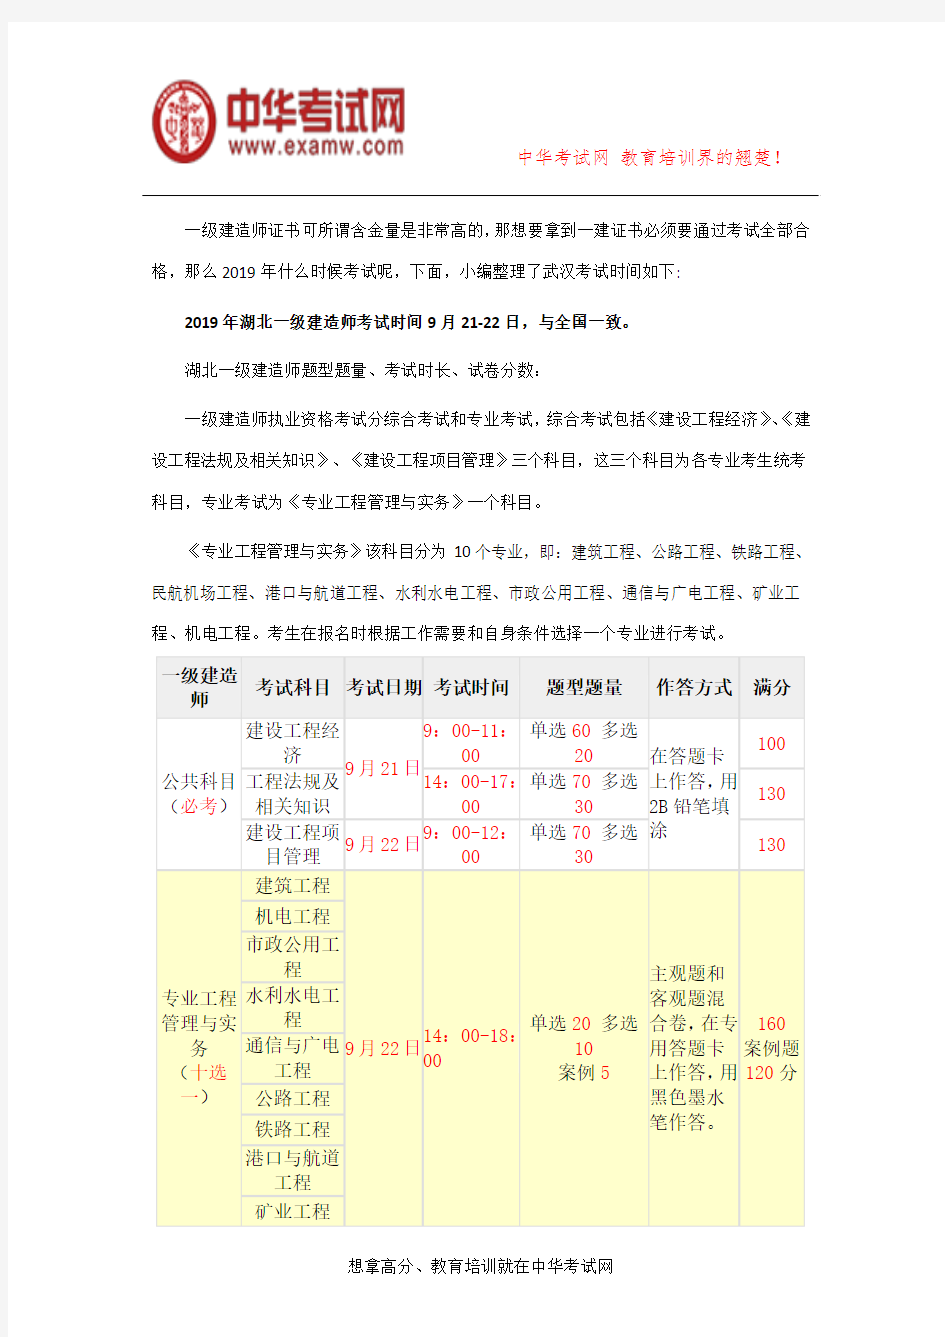 武汉2019年一级建造师考试时间